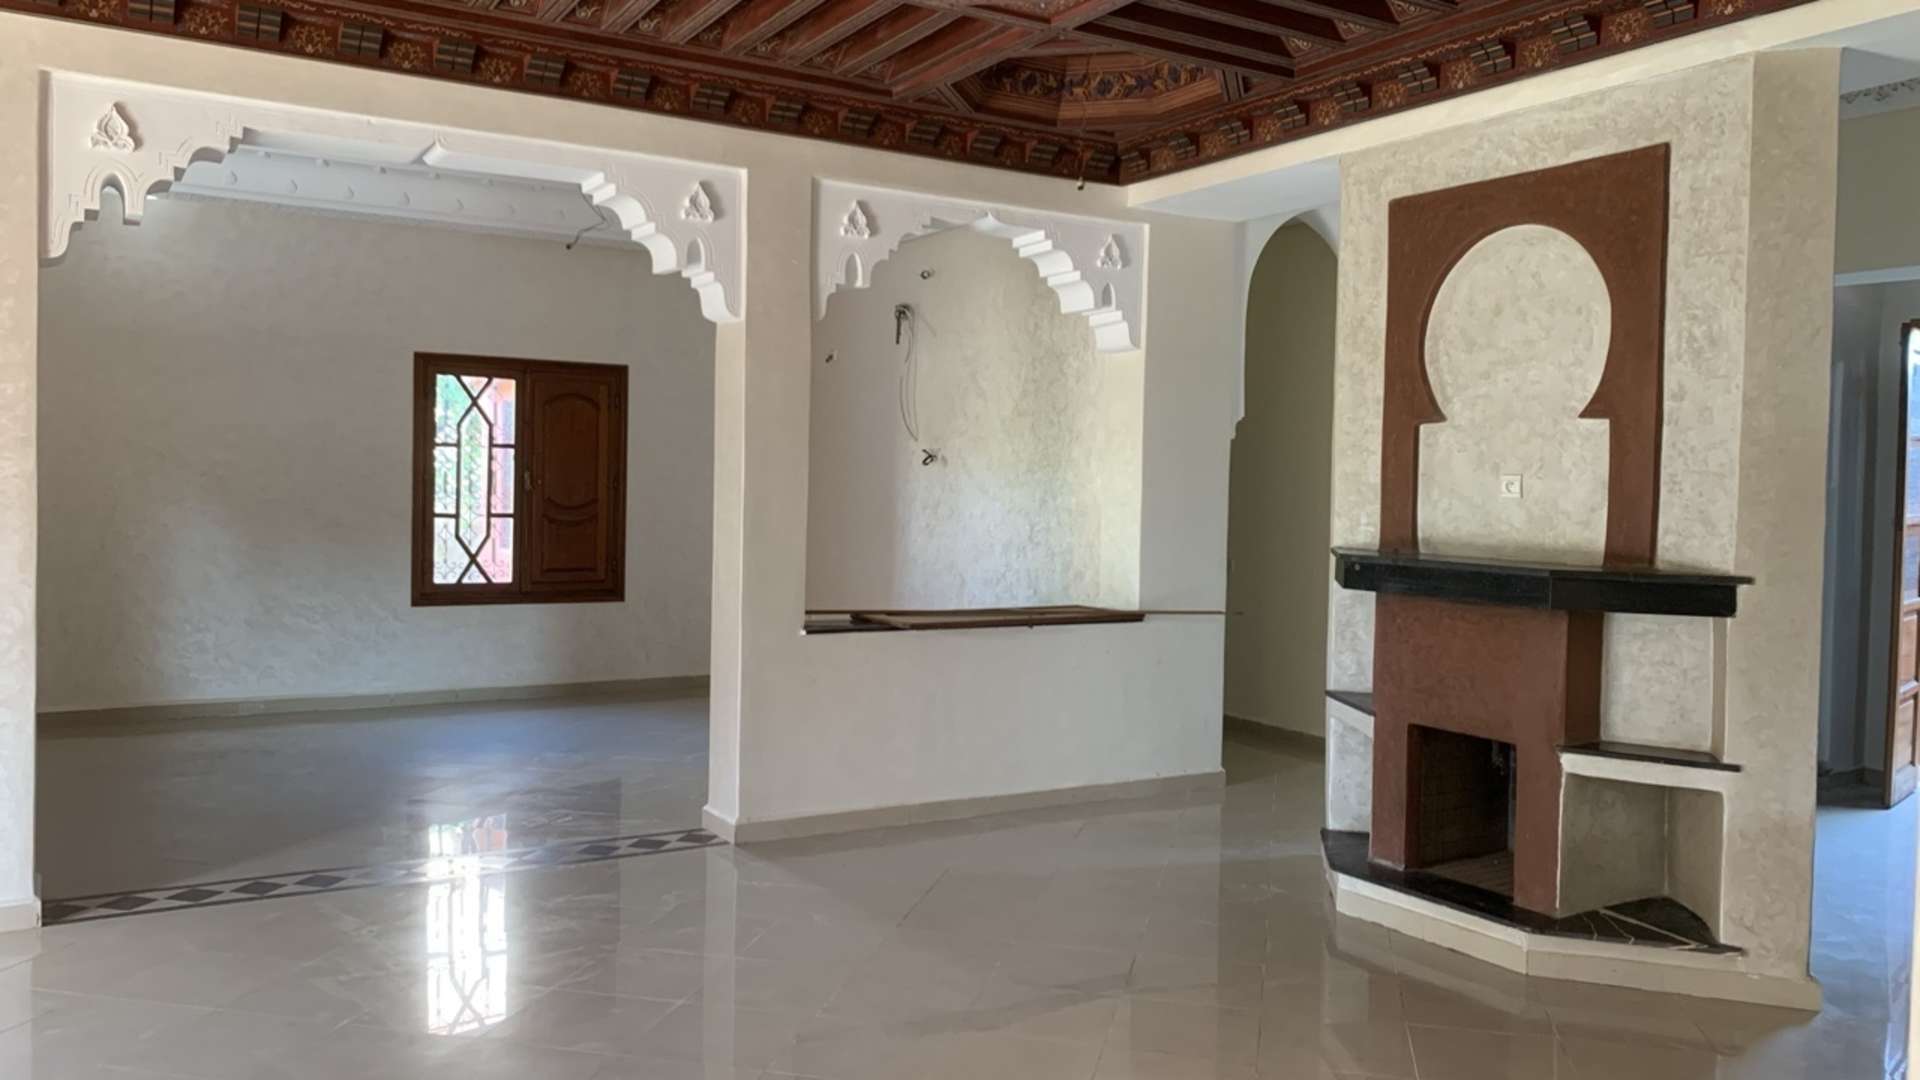 Vente,Villa,Villa de haut standing à vendre à Marrakech. 5 belles chambres. hammam, piscine,Marrakech,Route de Fès